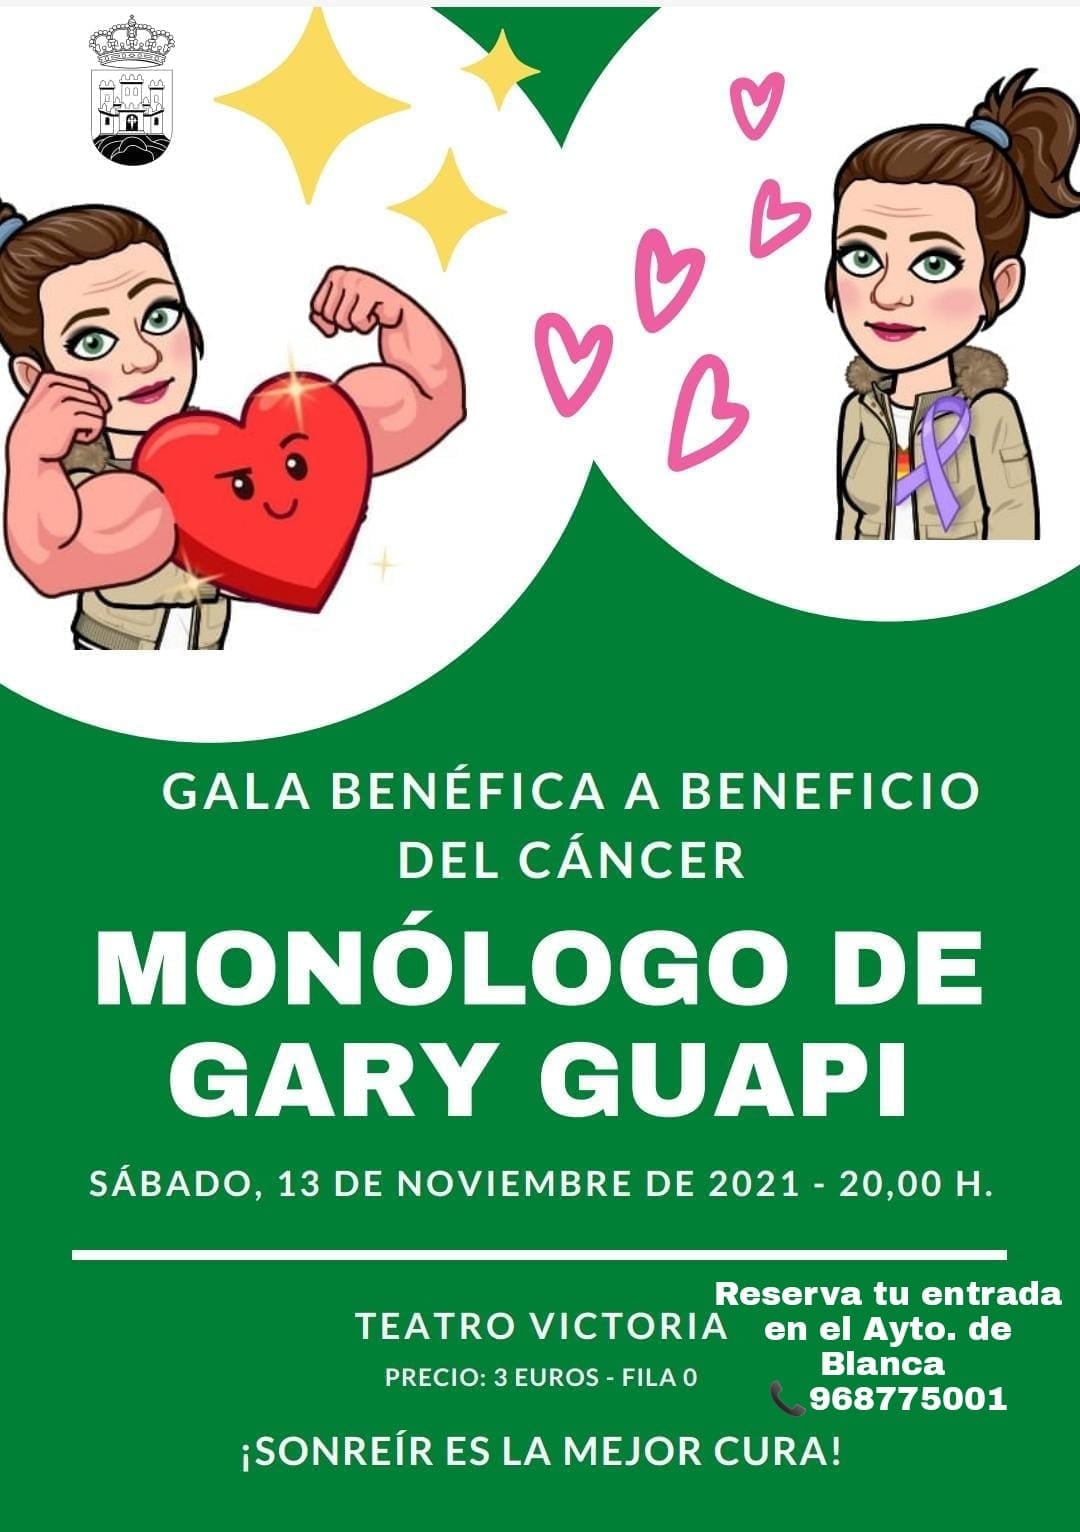 2021-11-13 Cartel Gala Benéfica Monólogo Gary Guapi en Blanca - Murcia